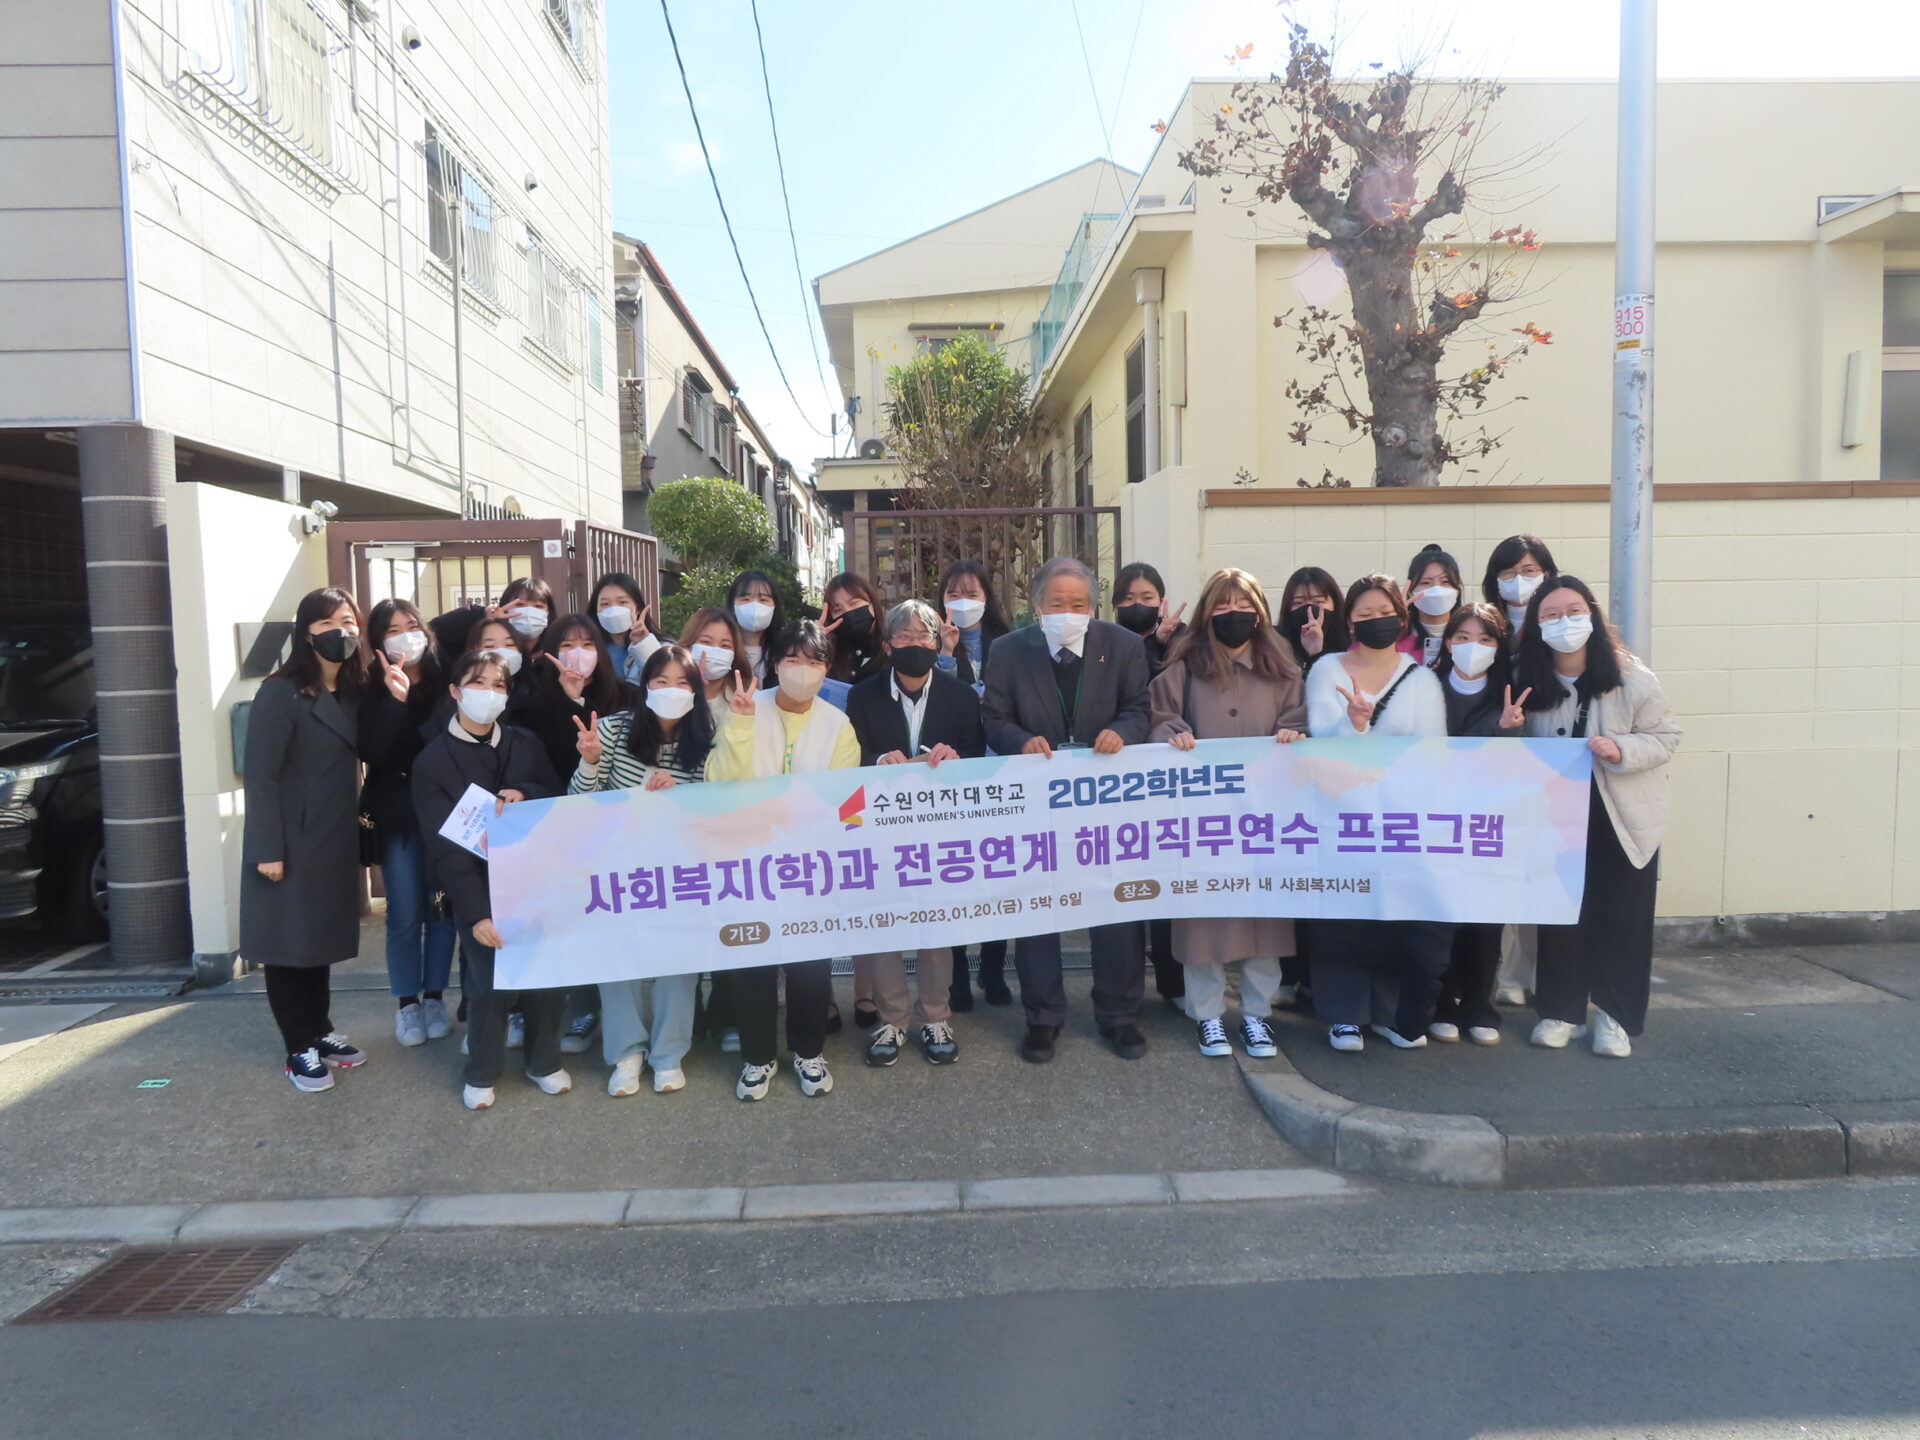 池島寮に韓国からお客さまが来てくれました（大阪市児童養護施設）